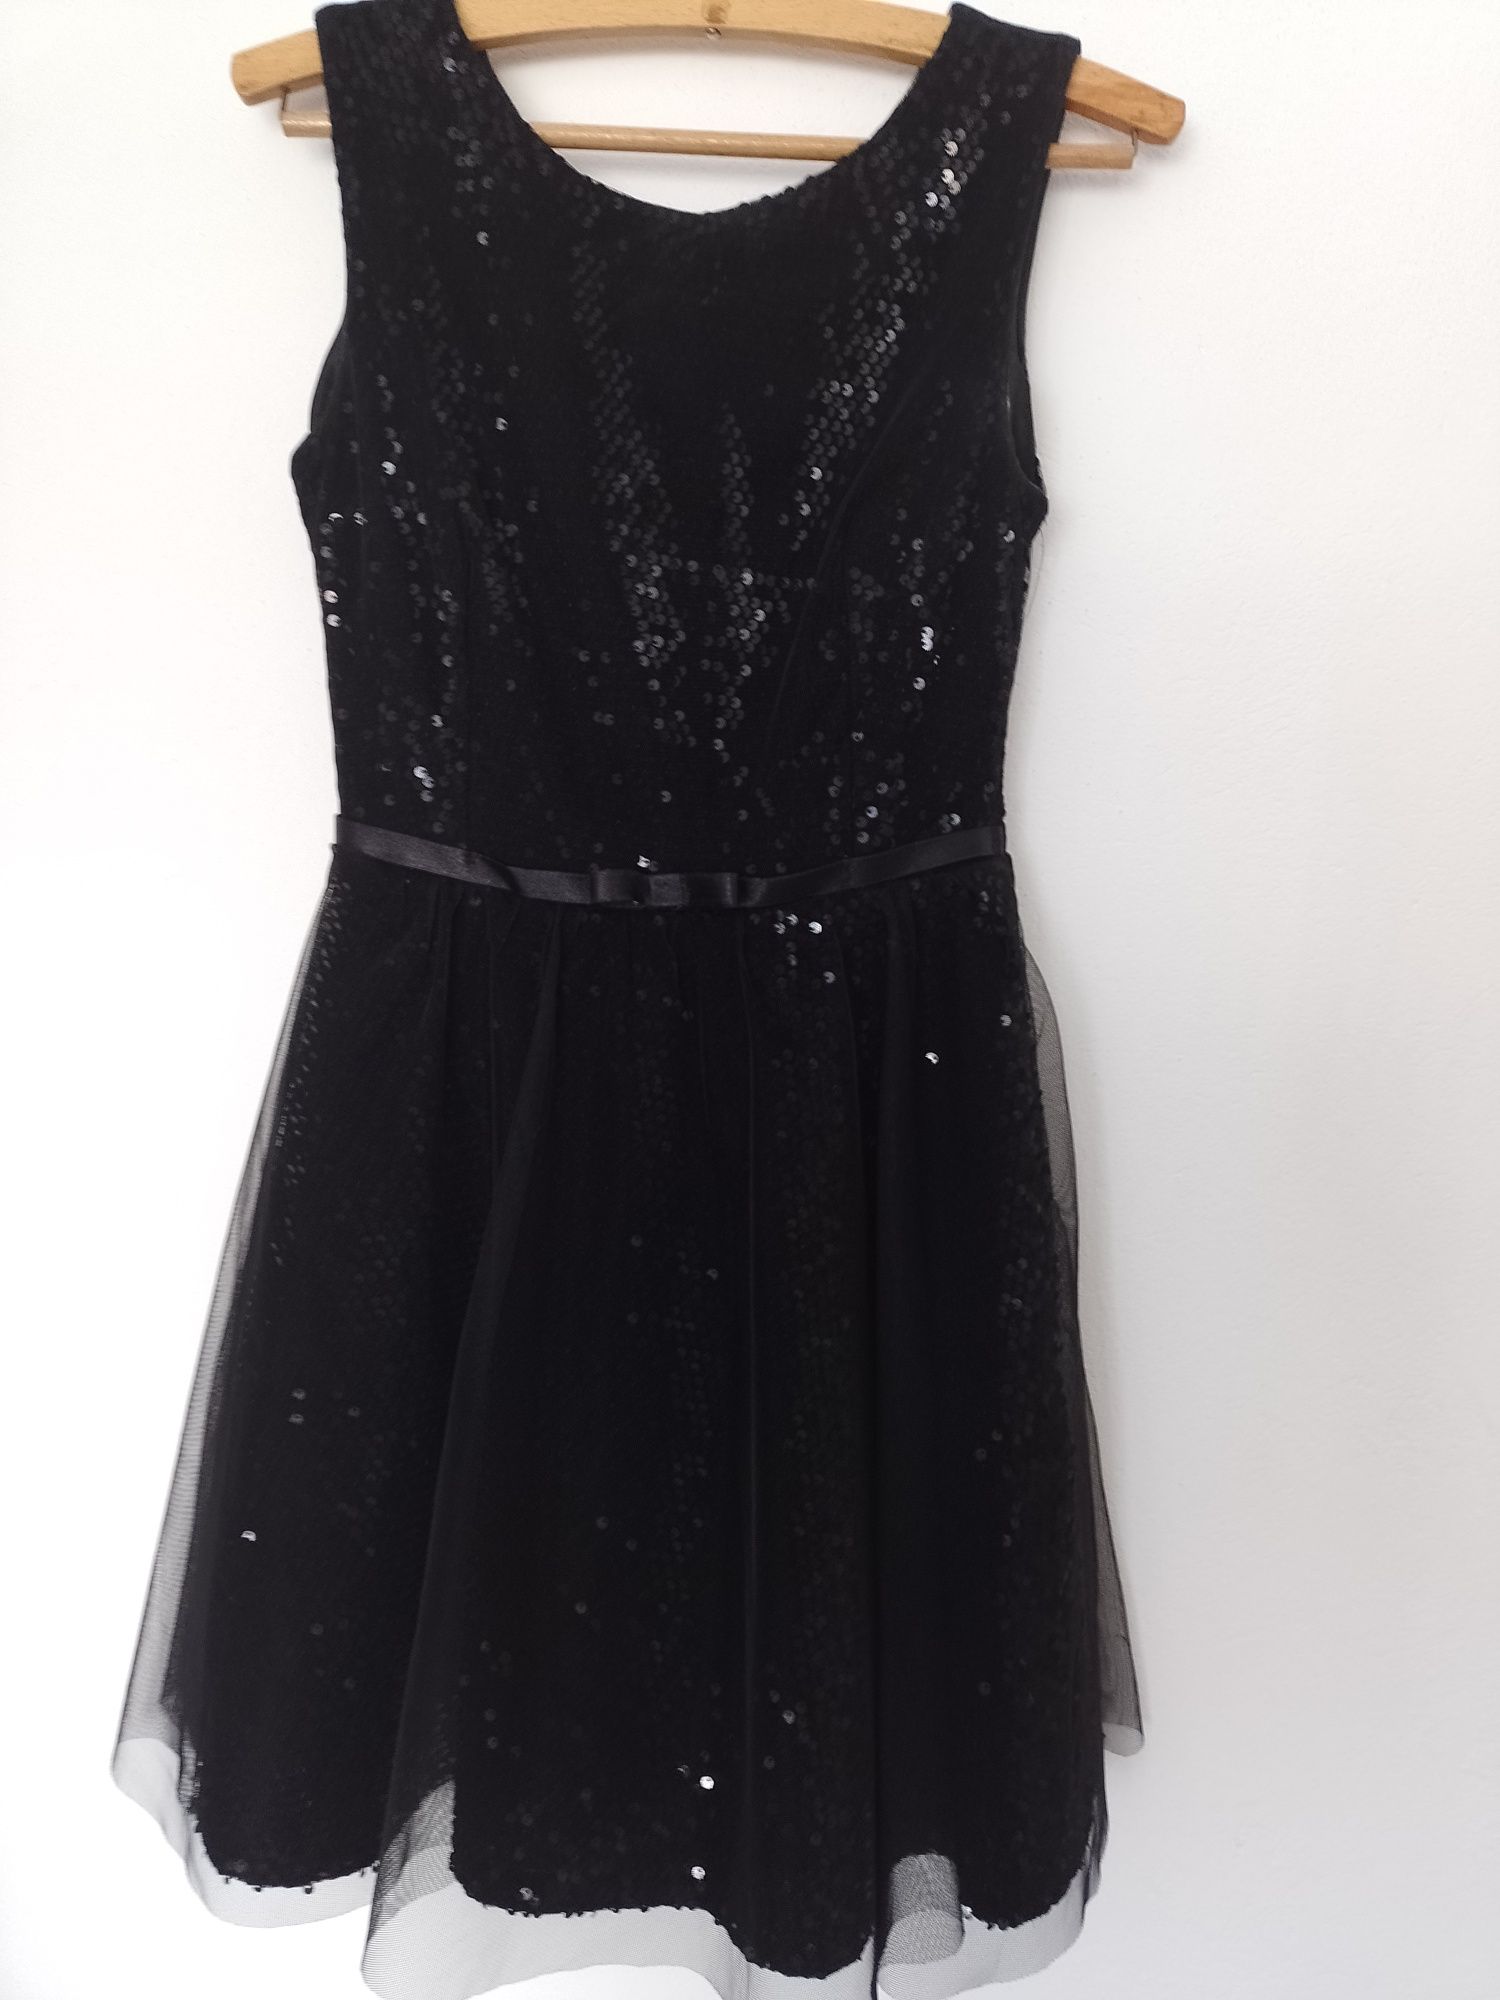 Elegancka czarna sukienka - rozmiar 34.